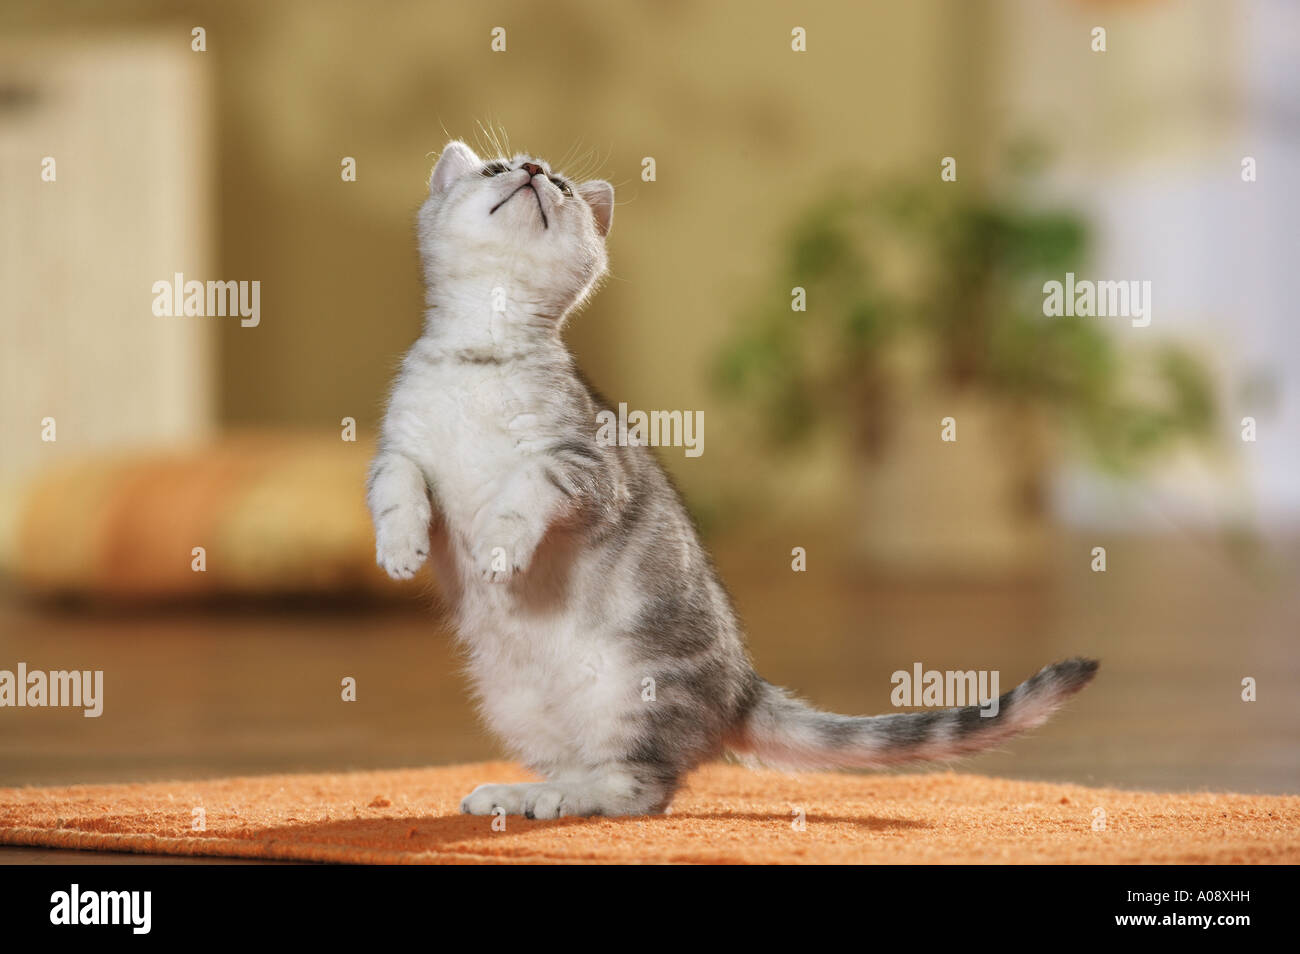 Britisch Kurzhaar Katze, stehend auf Hinterpfoten Stockfotografie - Alamy